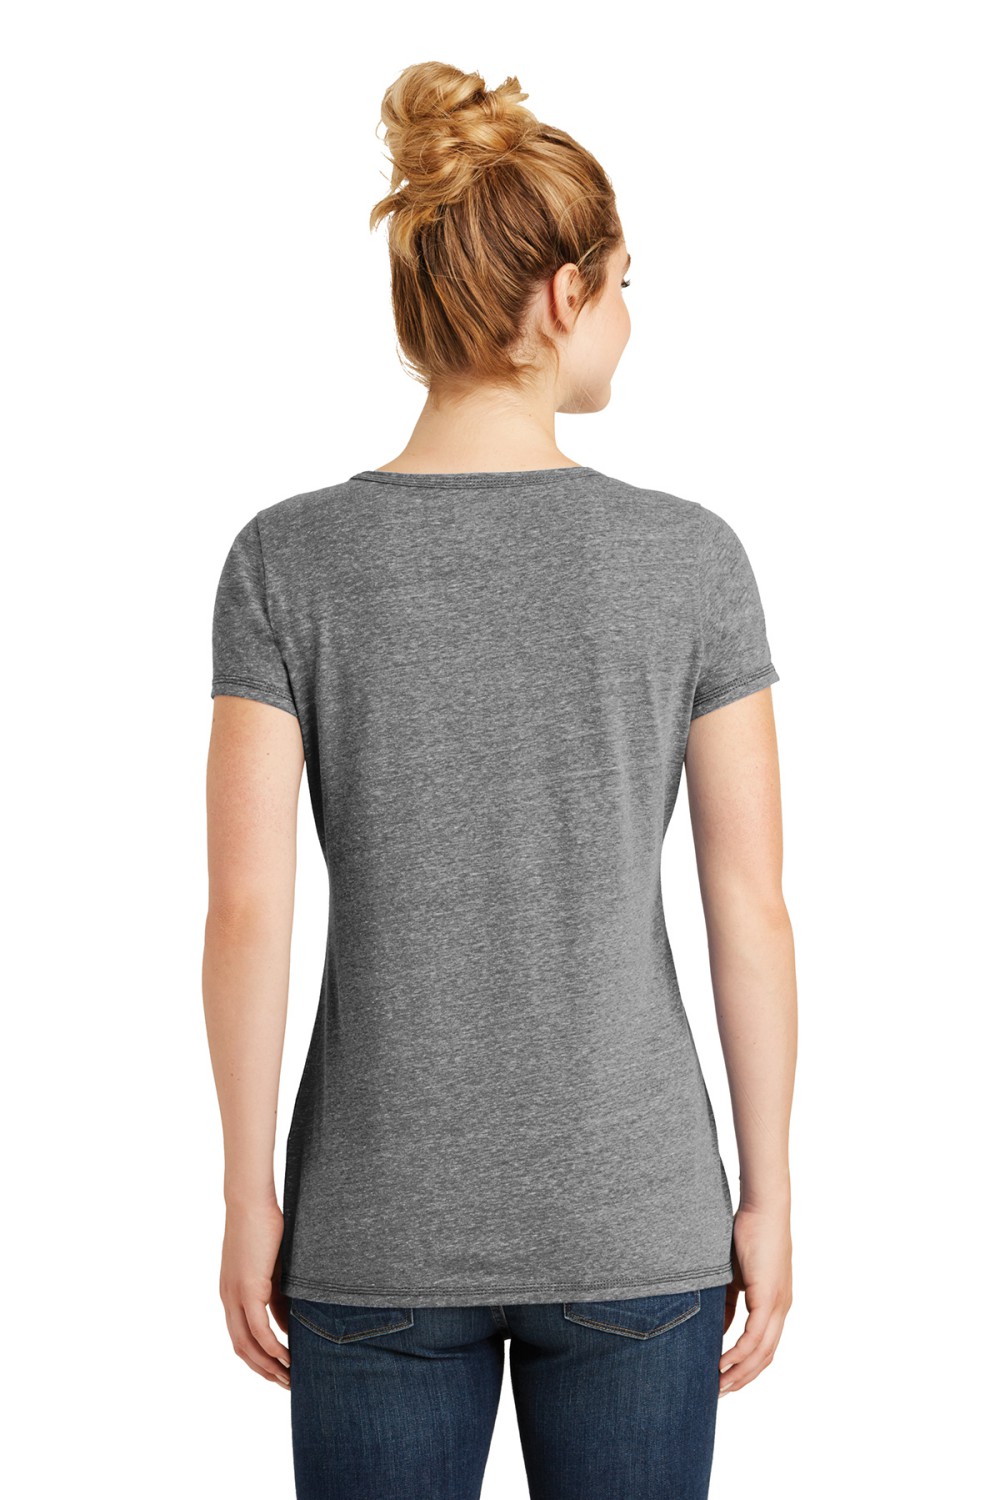 'New Era LNEA130 Women's Scoop T-Shirt'